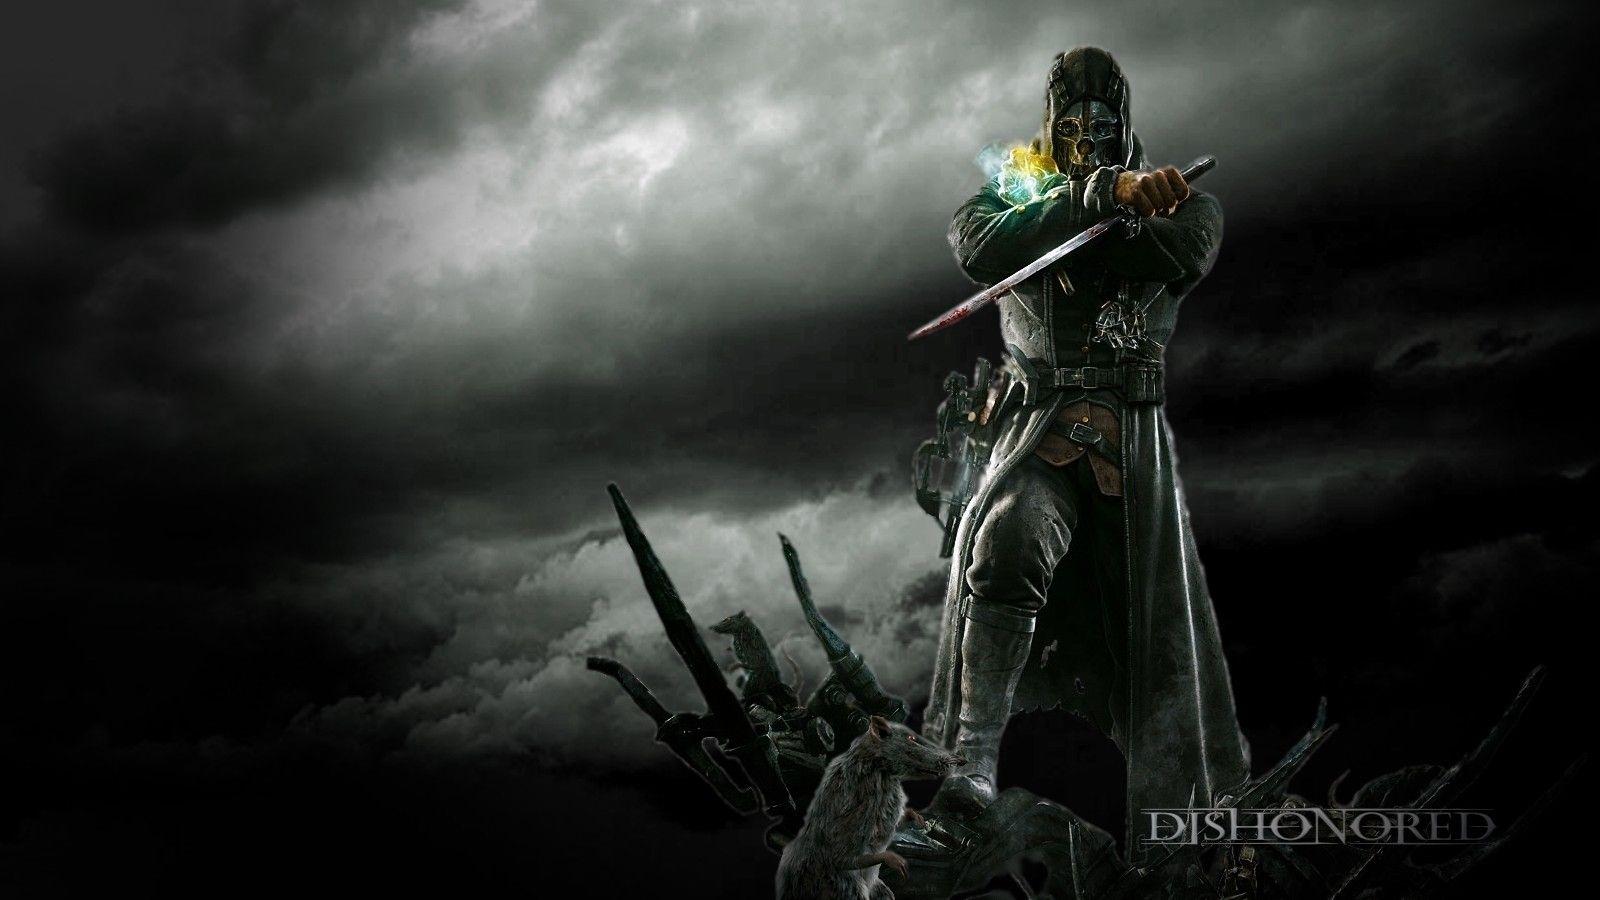 Steam Workshop::Dishonored - Corvo's Mask